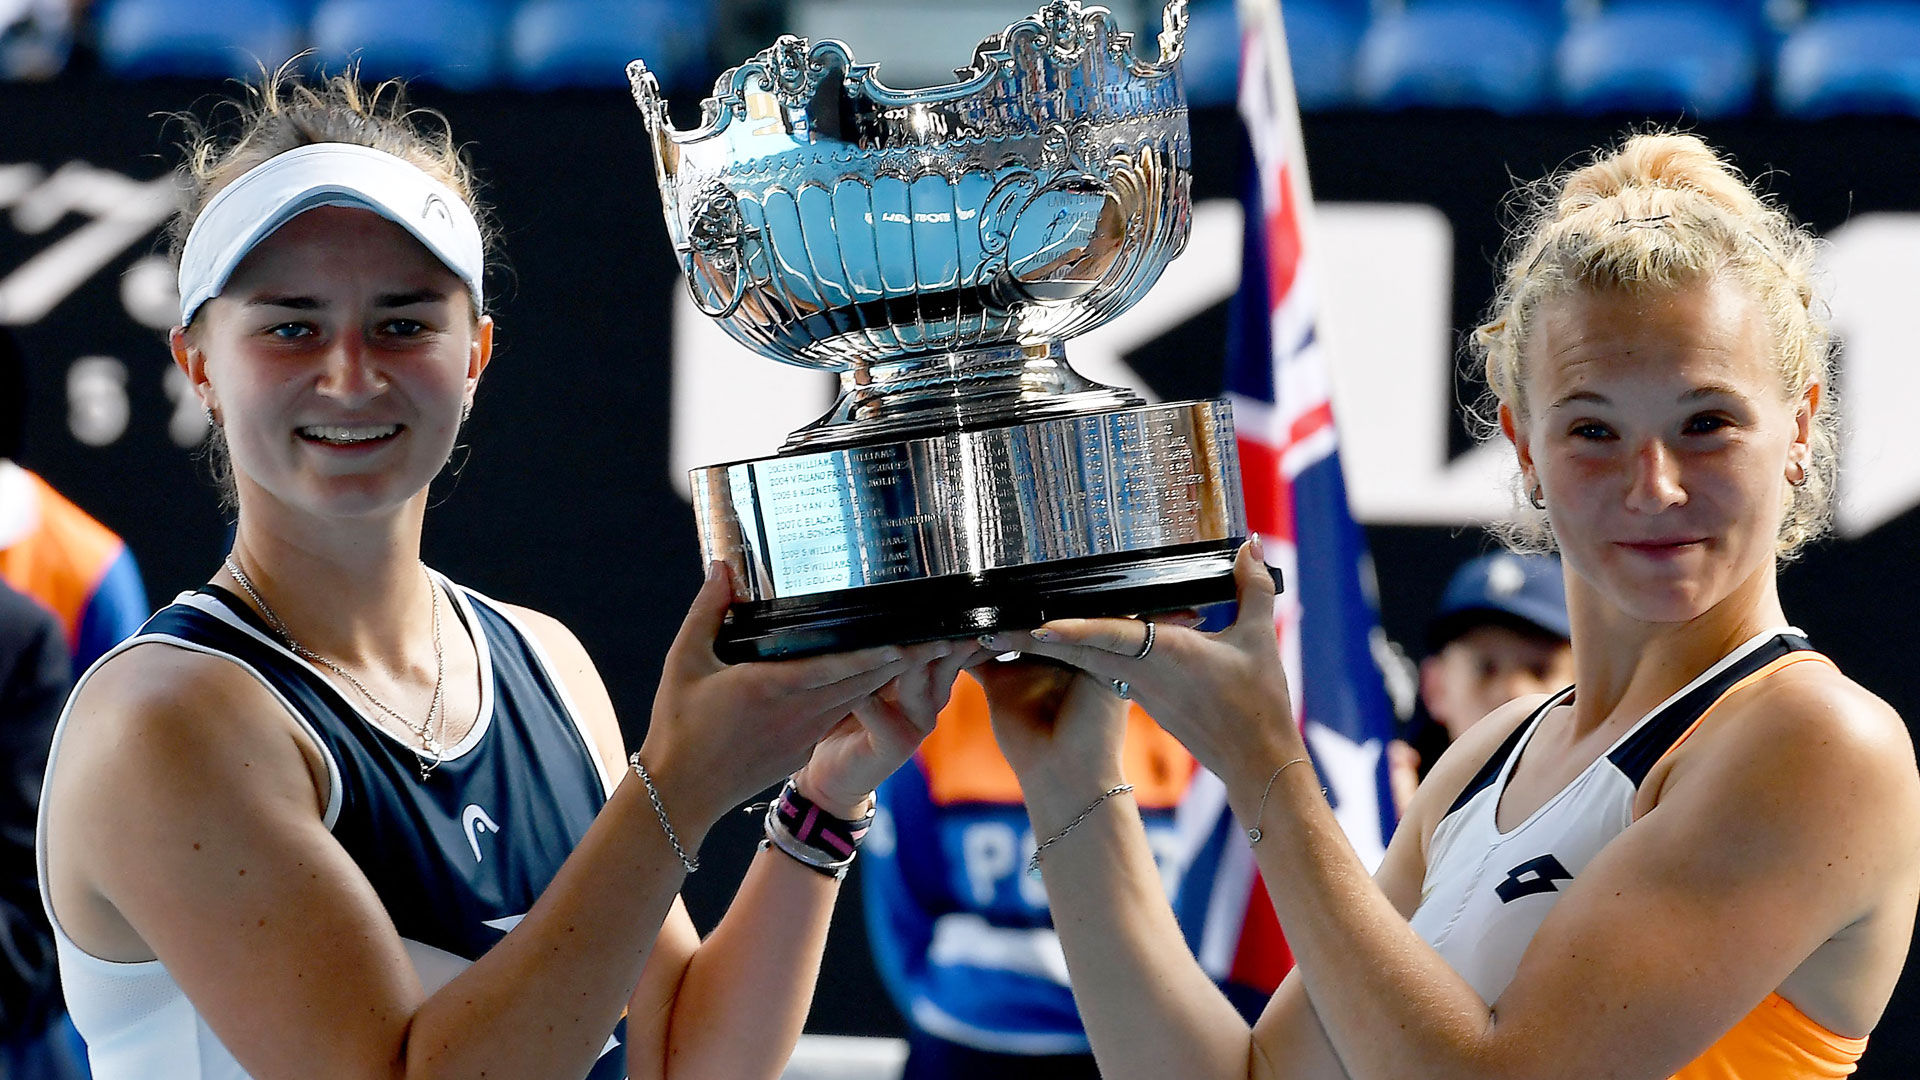 Aus Open: Barbora Krejcikova, Katerina Siniakova win women’s doubles title